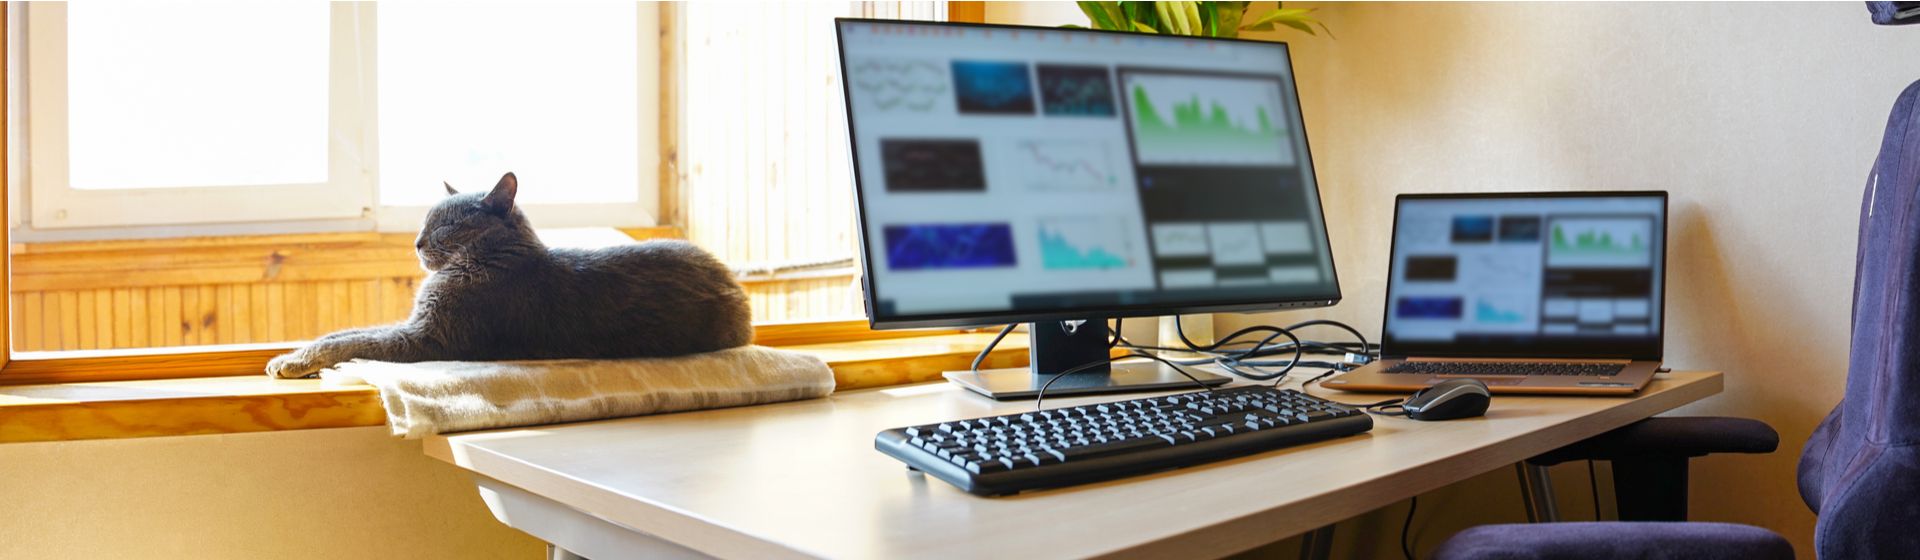 Mesa de escritório com monitor 24 polegadas em cima e gato cinza deitado ao lado